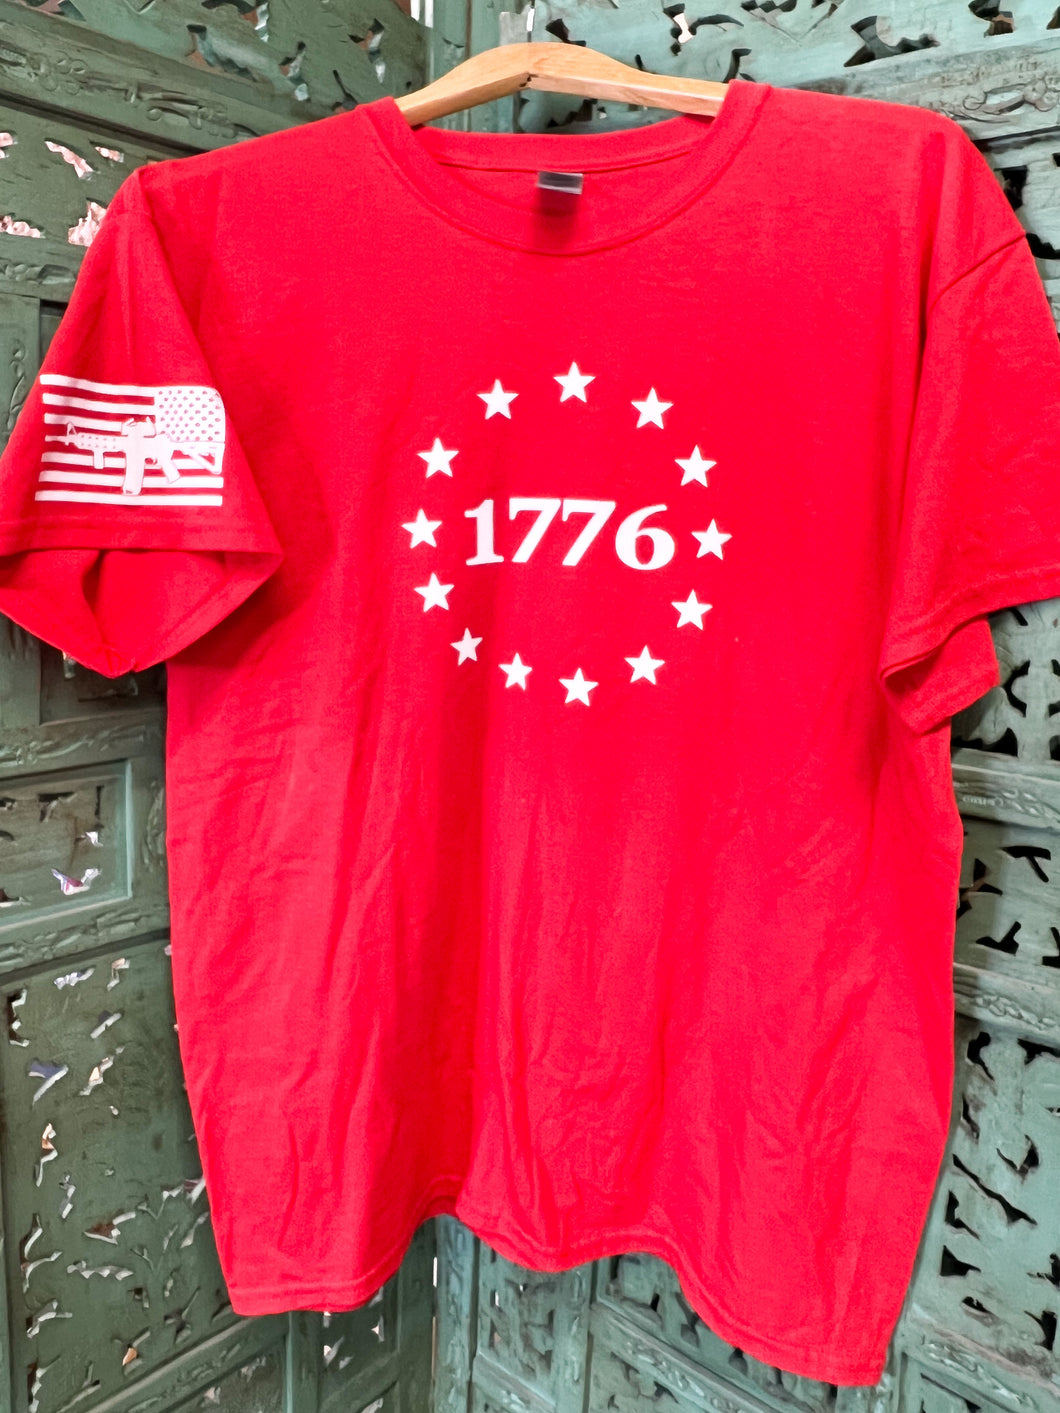 1776 Tshirt - Large